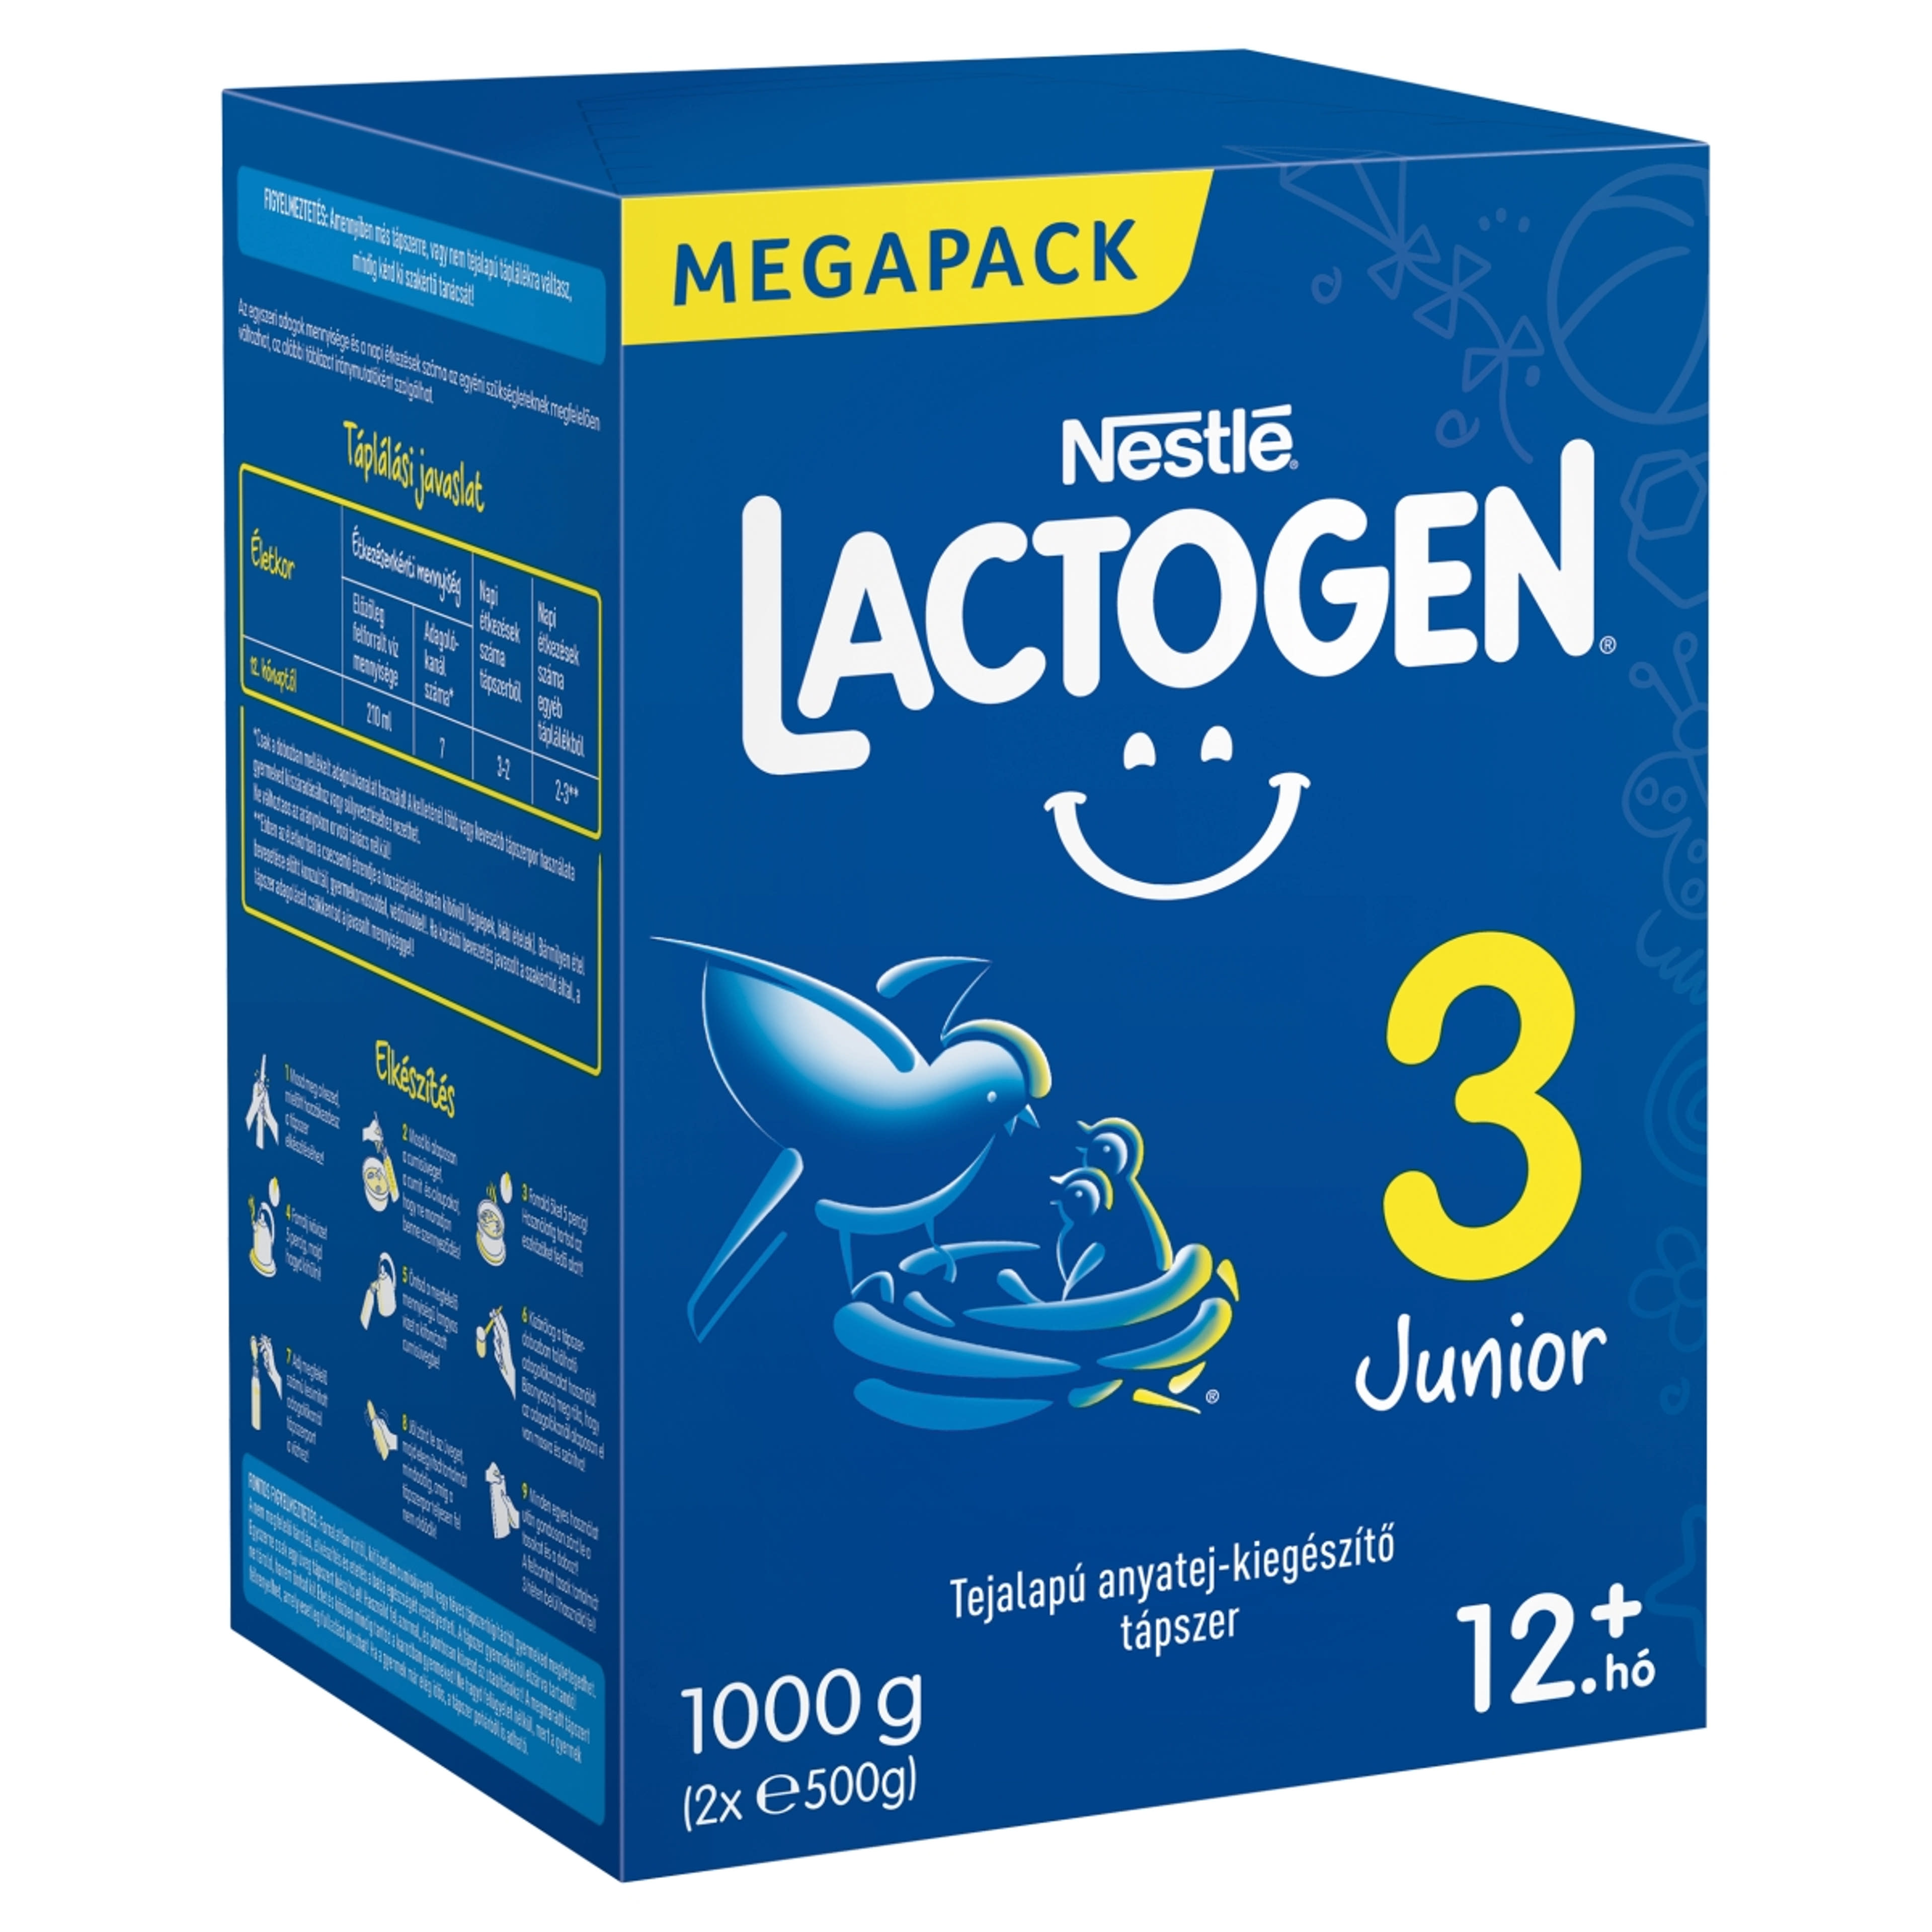 Lactogen 3 Junior tejalapú anyatej-kiegészítő tápszer 12 hónapos kortól - 1000 g-2